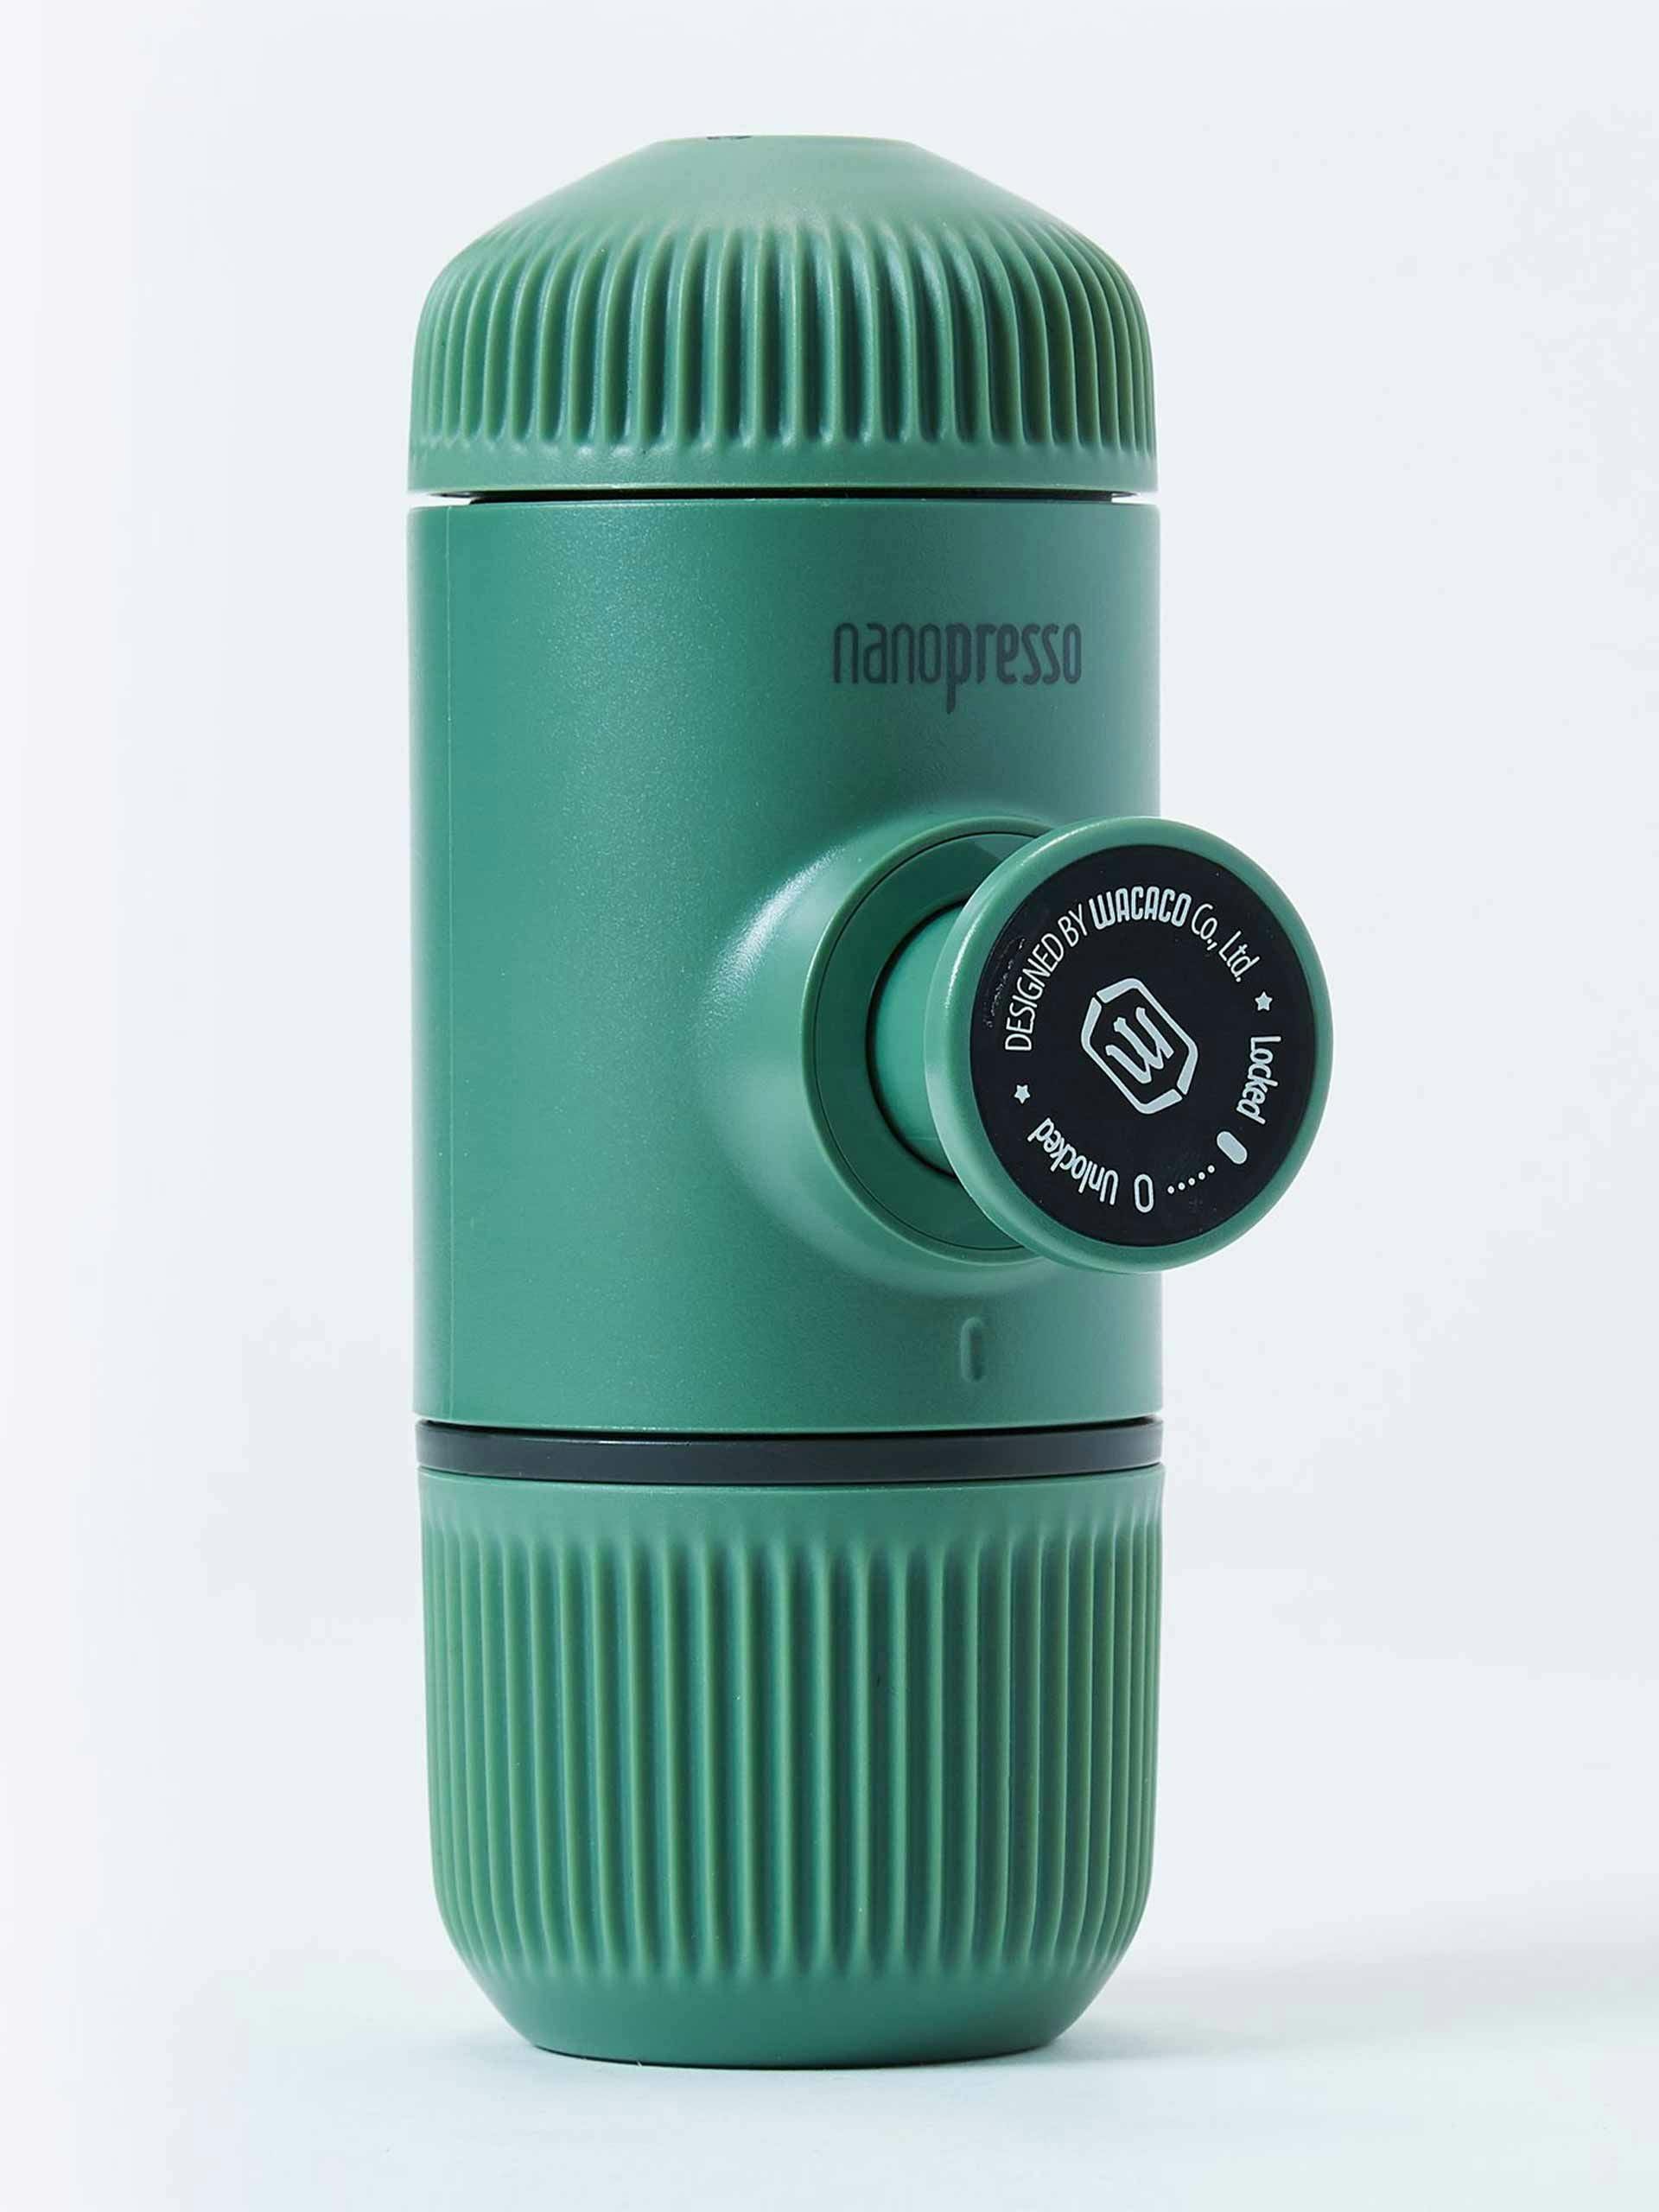 Green nanopresso portable espresso machine